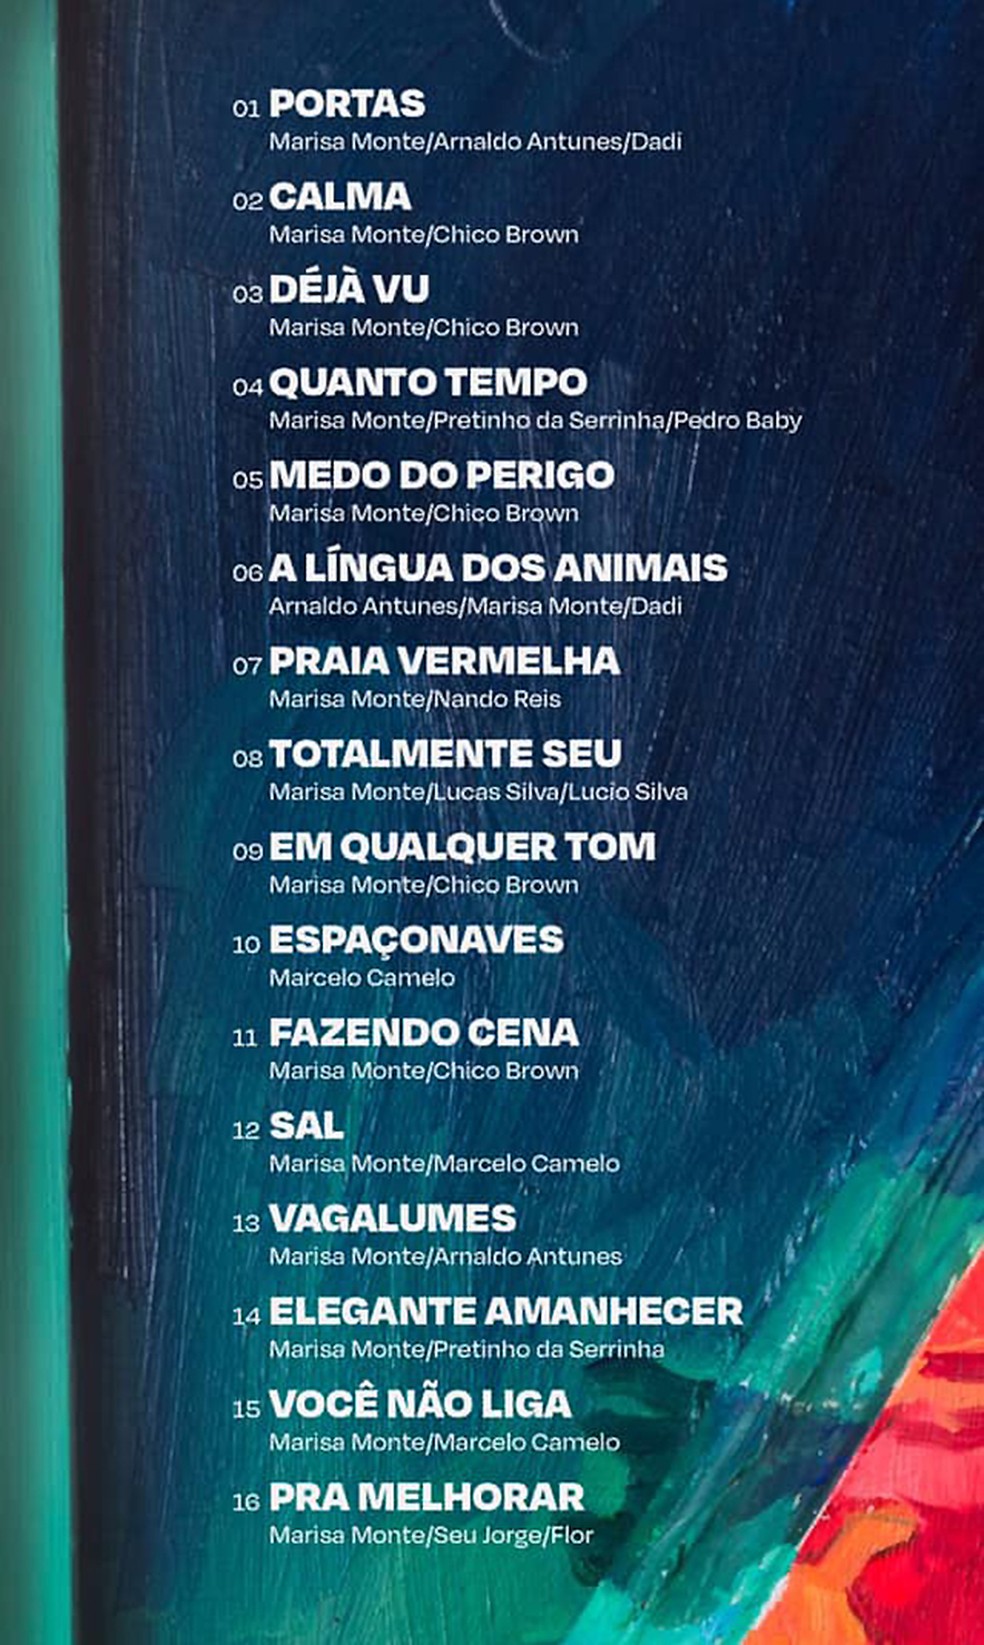 Marisa Monte revela nomes e autores das 16 músicas do álbum 'Portas' | Blog  do Mauro Ferreira | G1